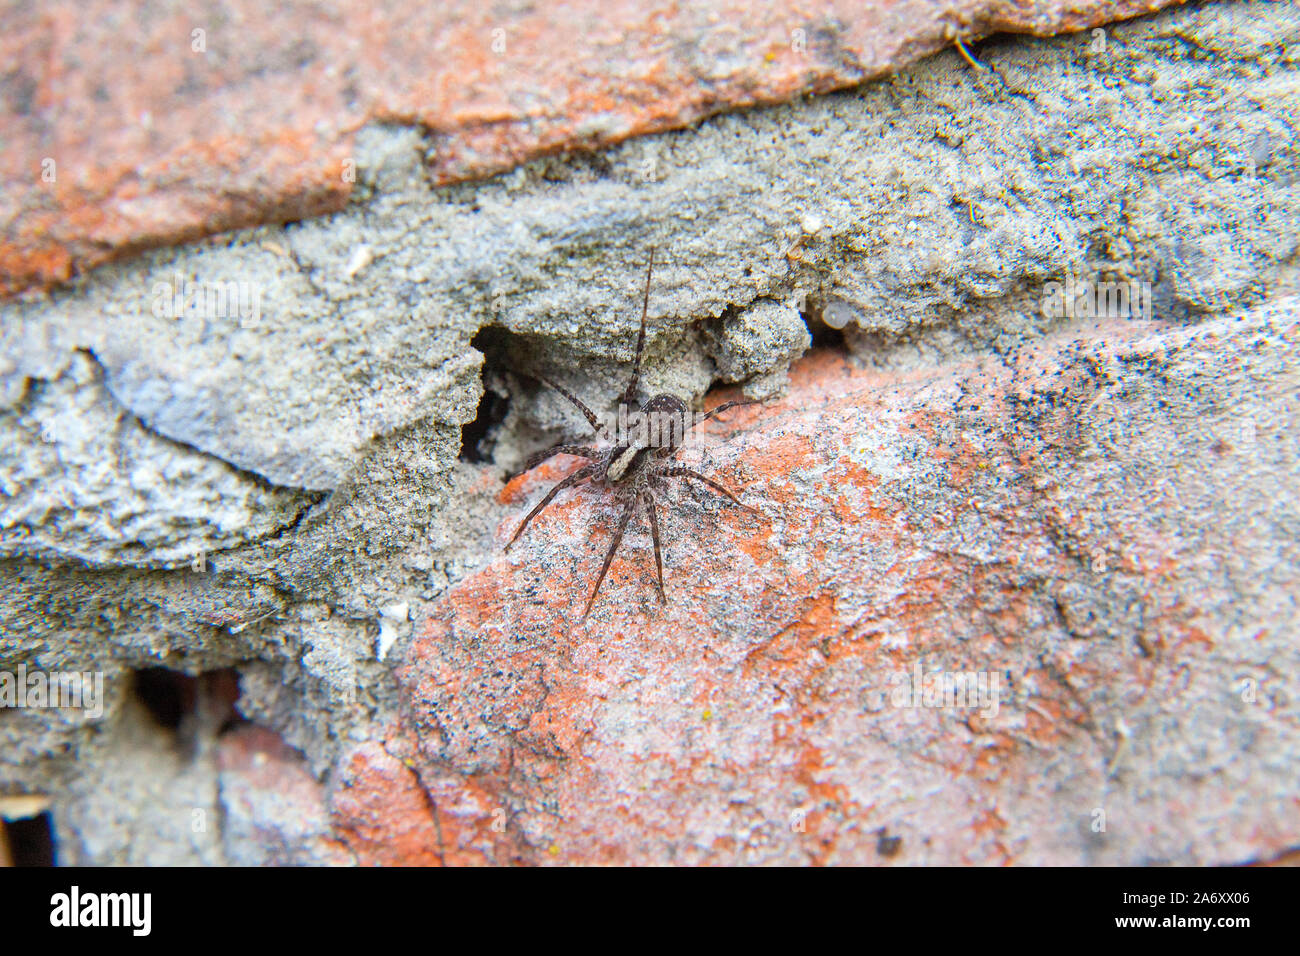 Plan Macro sur petite araignée gris sur fond brique. Petit / petite araignée peu atterrissage sur fond brique vintage. Banque D'Images